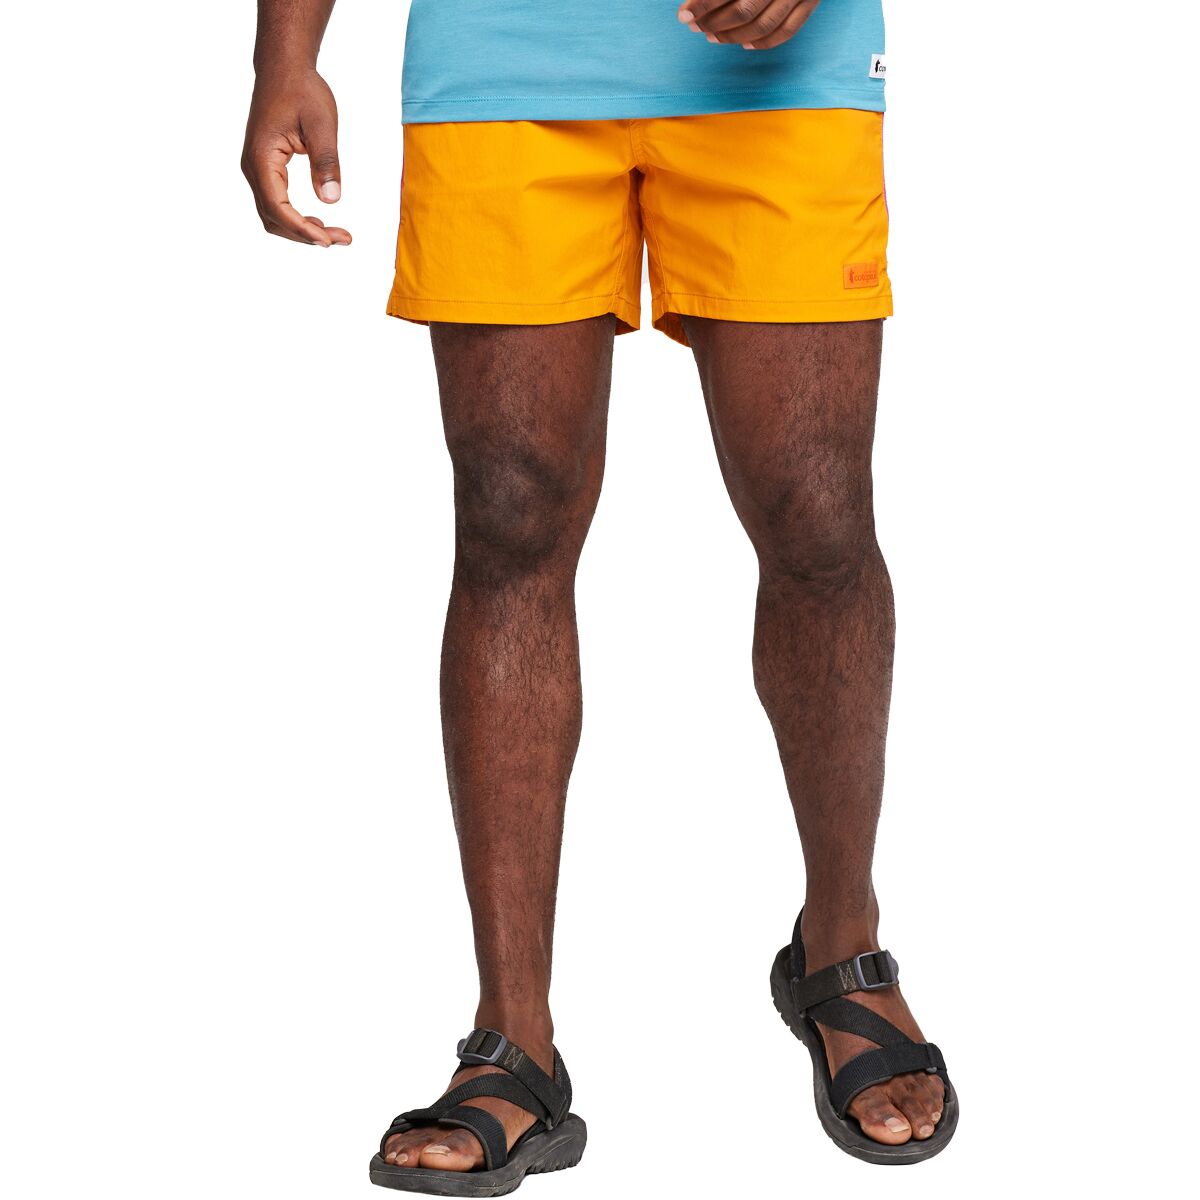 Cotopaxi Brinco Solid Short - Men's